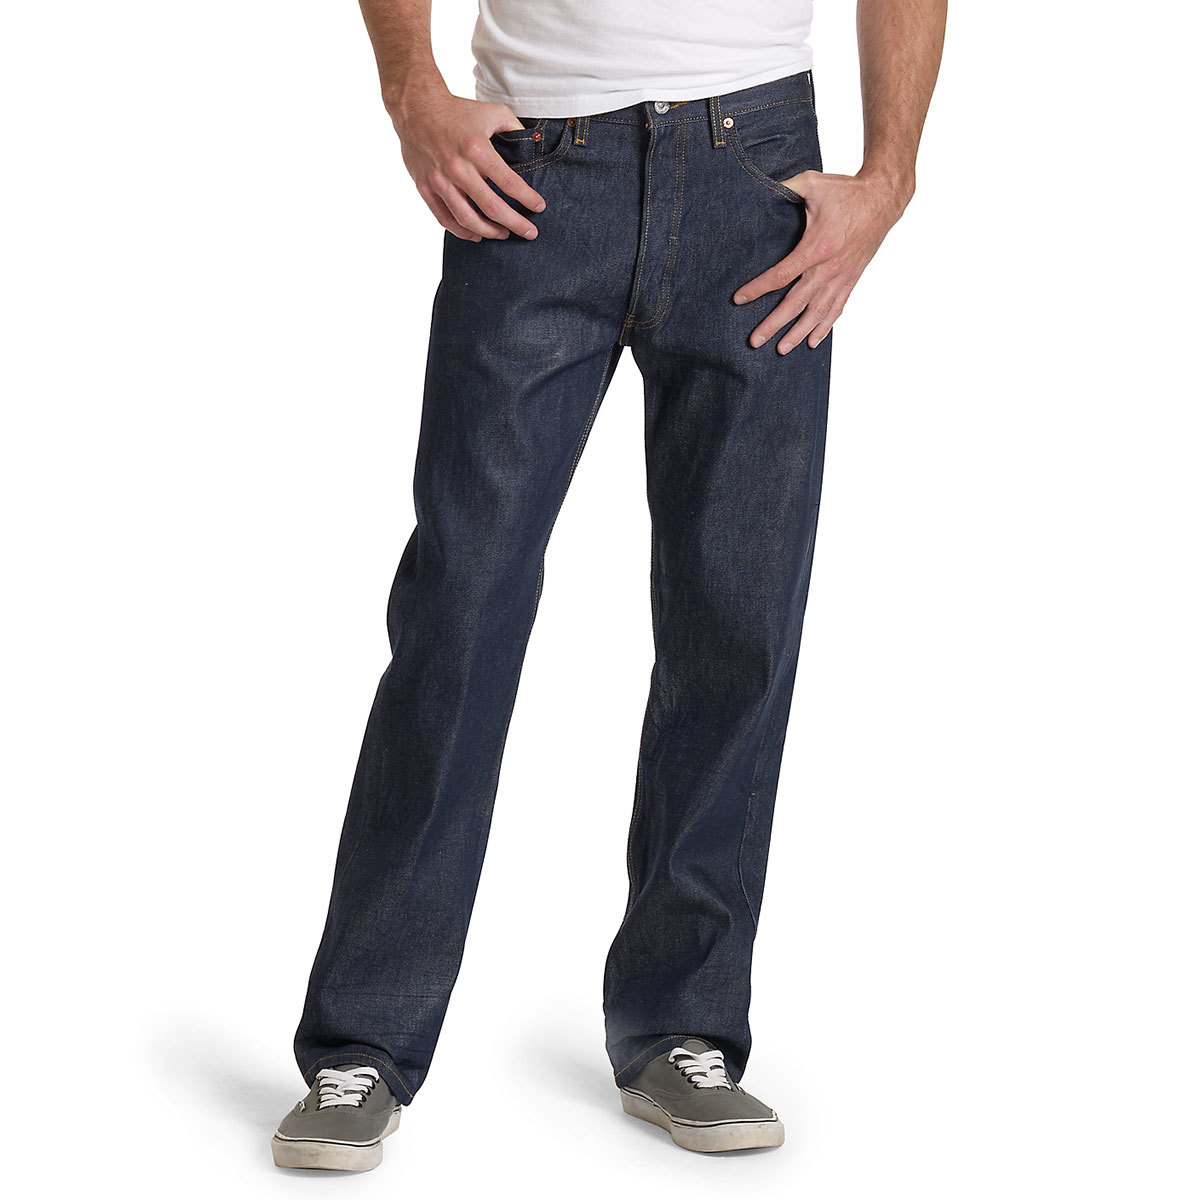 Levi's Men's 501 Original Fit Jeans - Blue, 35/30